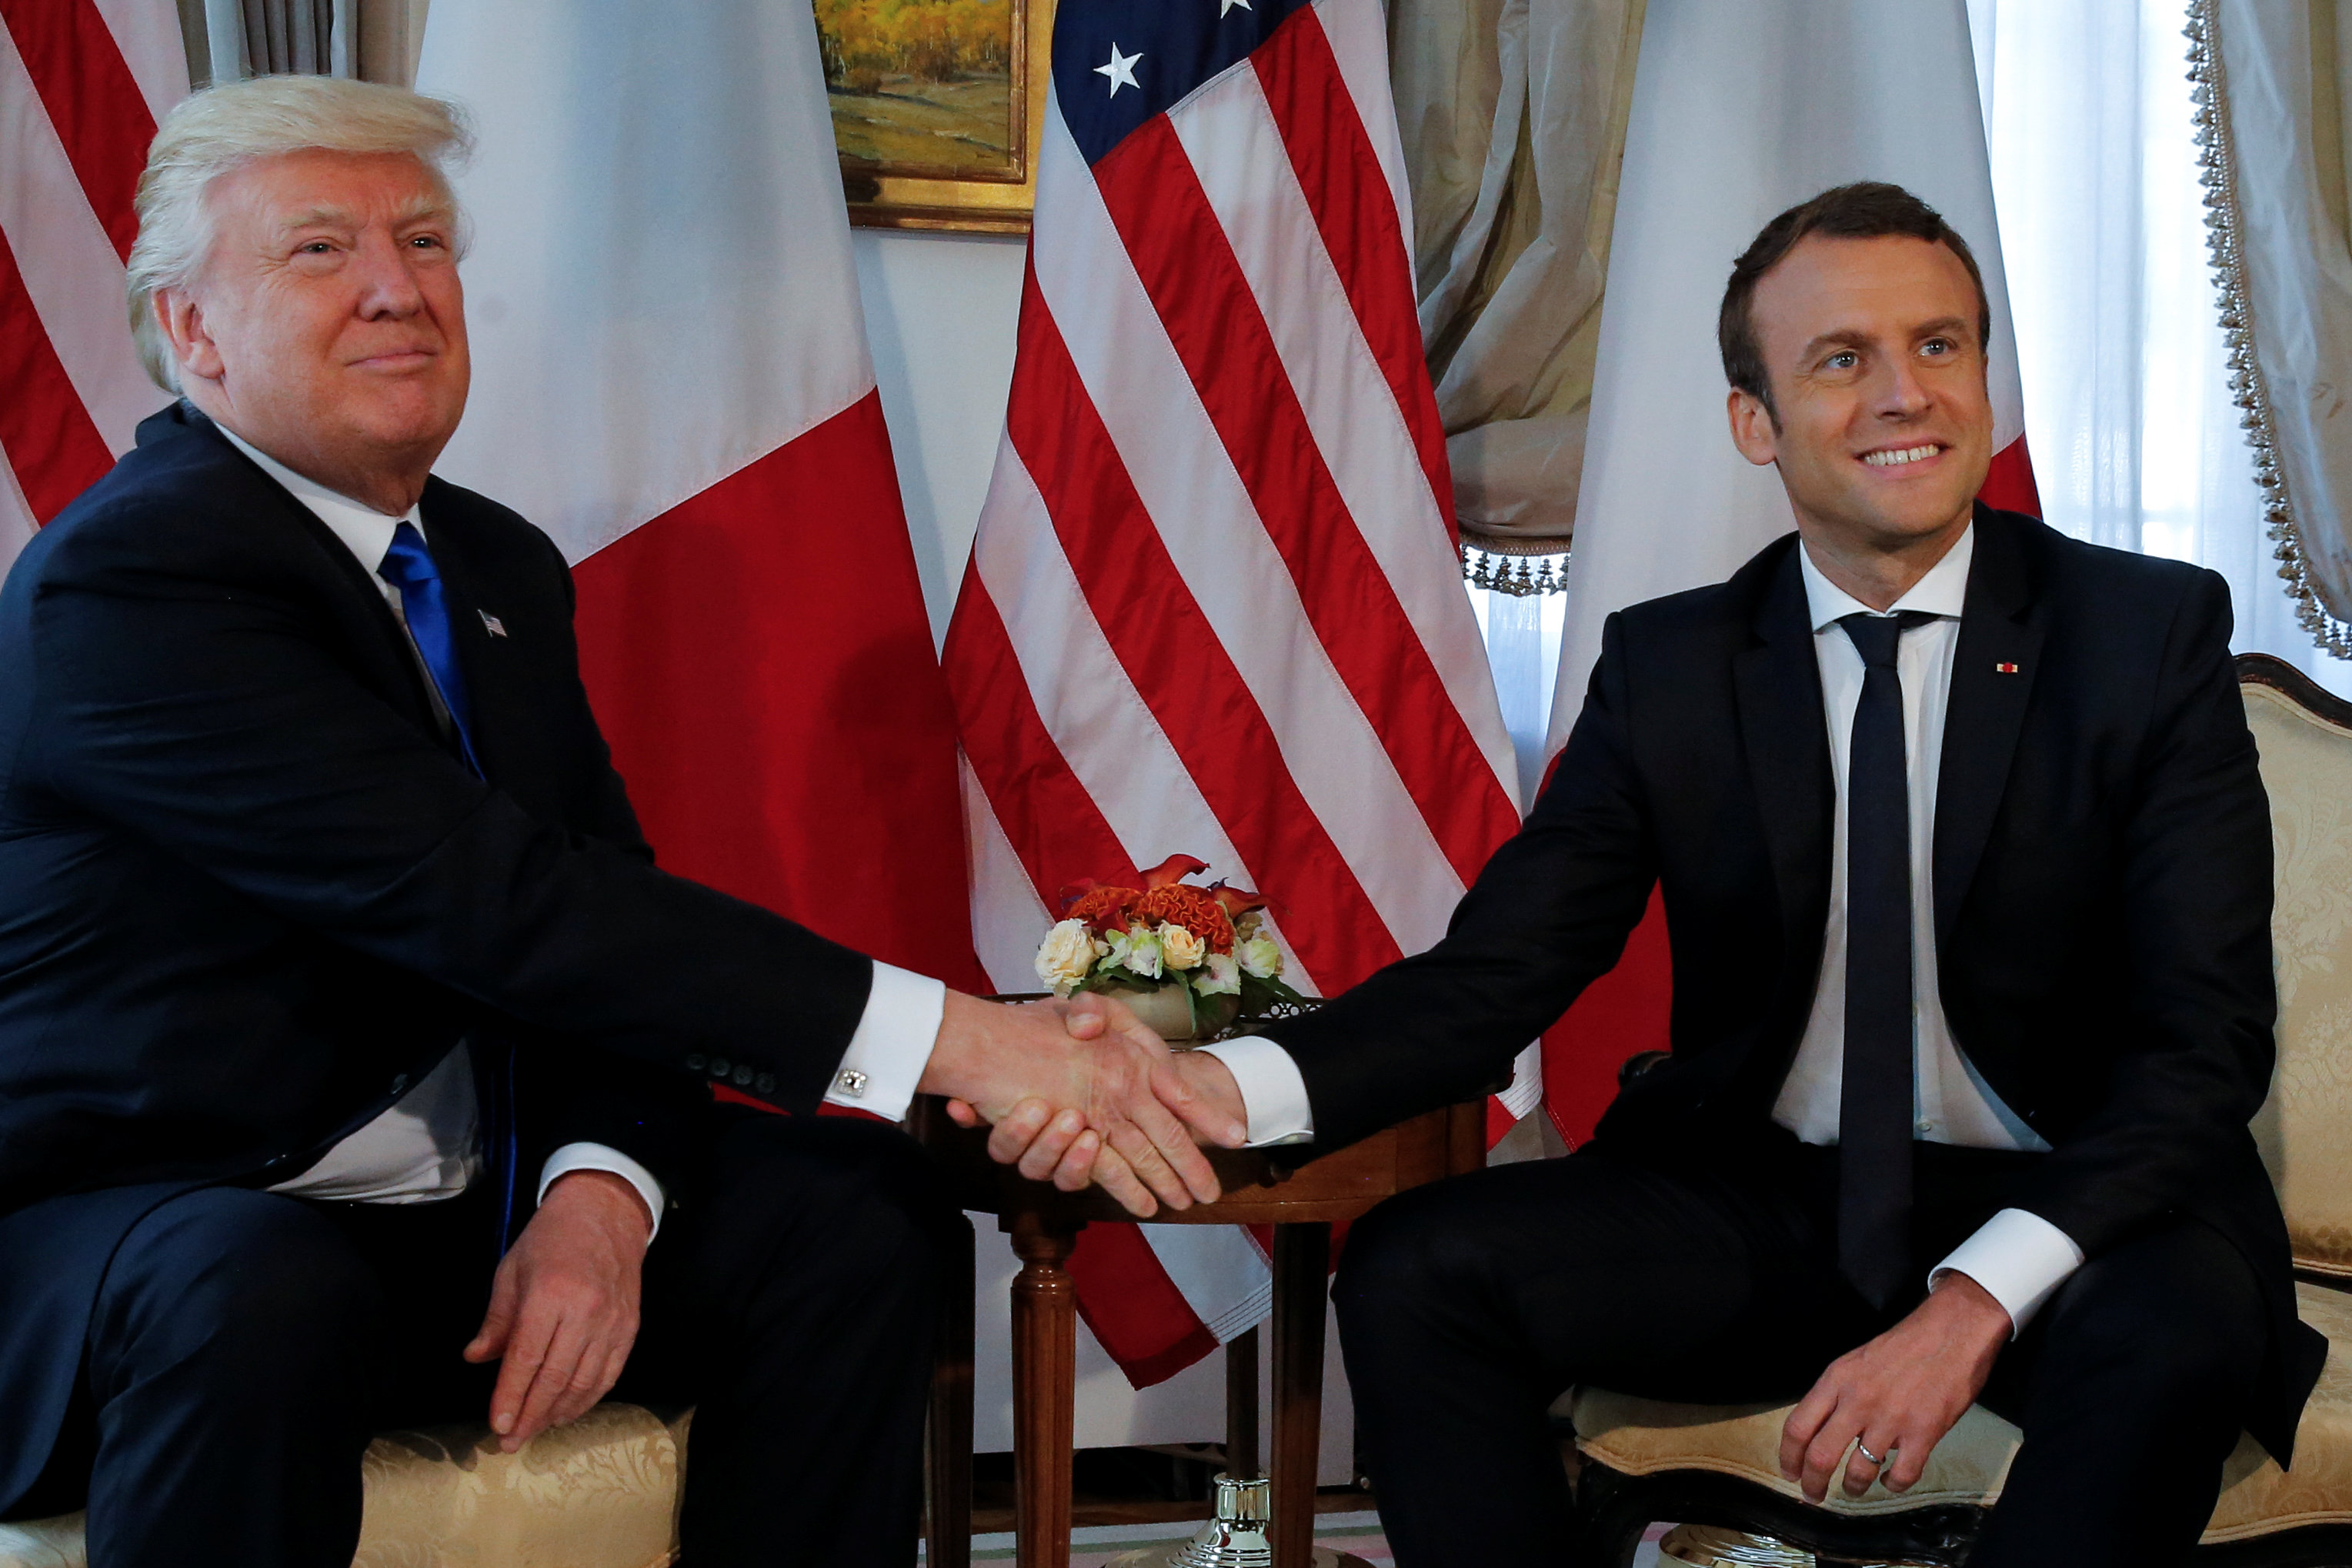 Video. El incómodo apretón de manos entre Trump y Macron